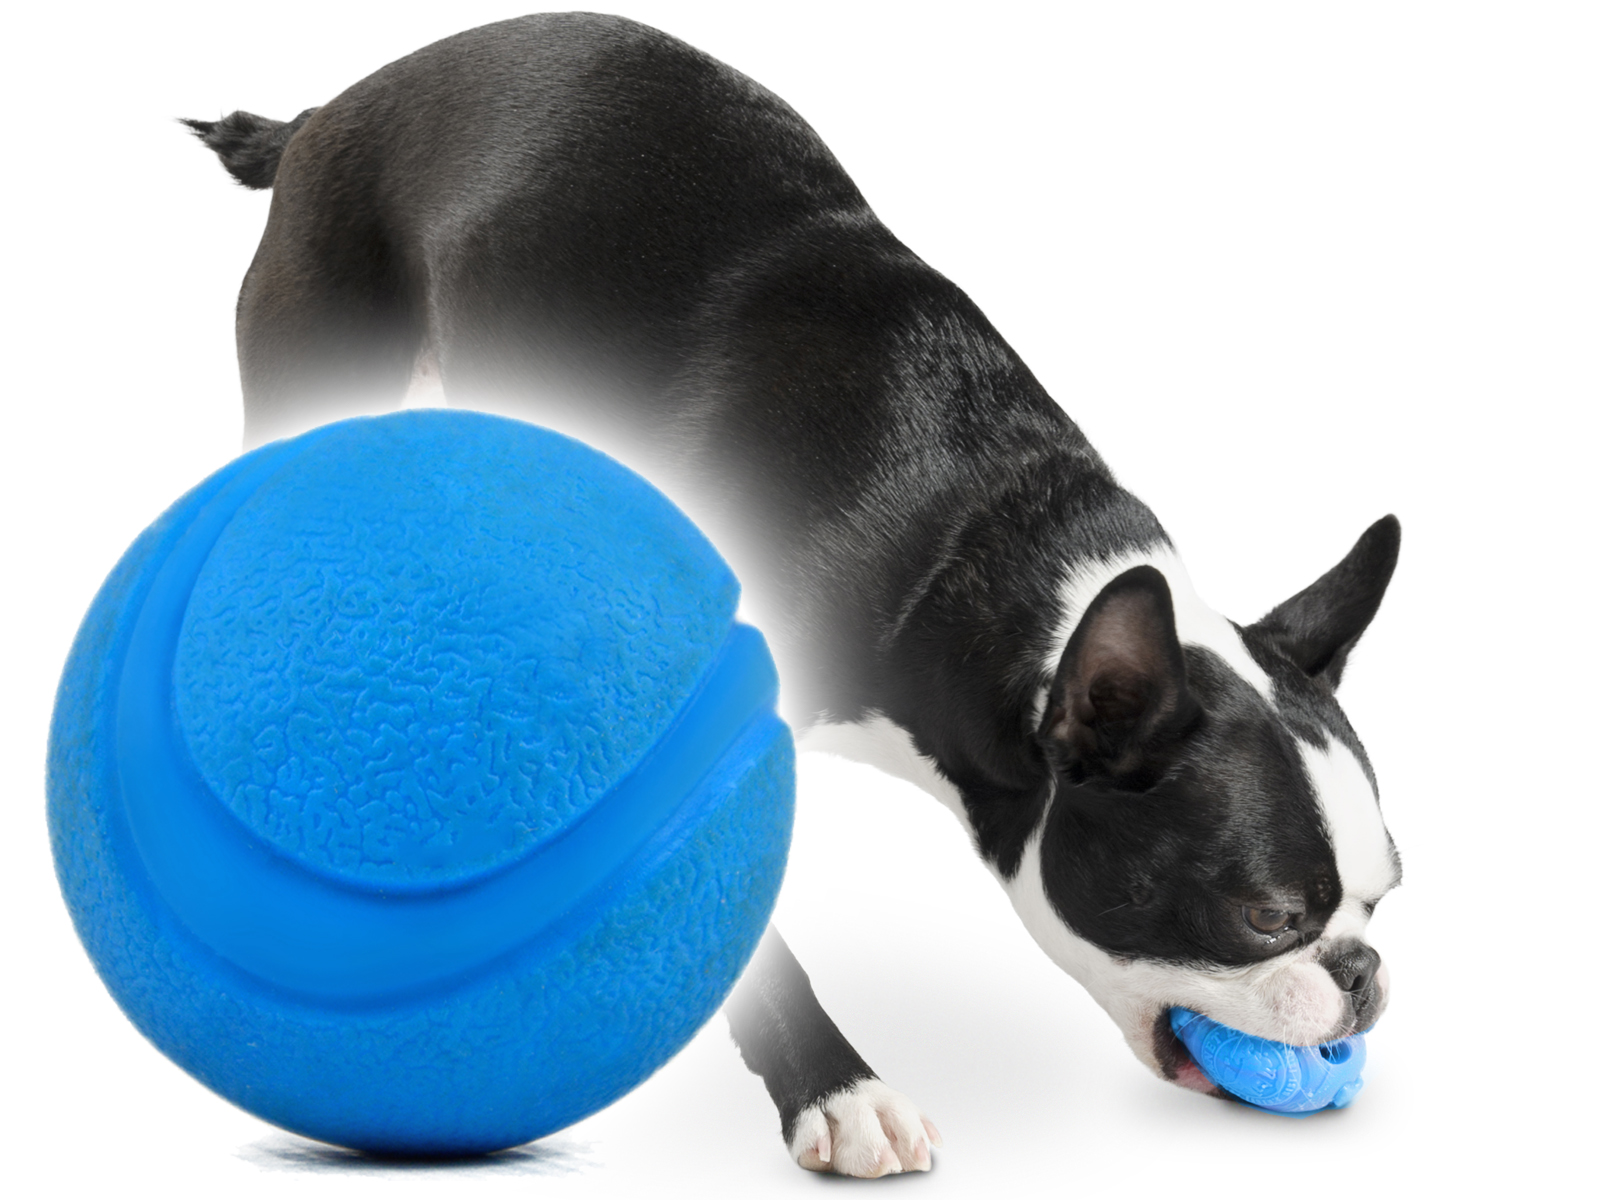 Игрушка Апорт для собак. Мяч апортировочный для собак. Doog игрушка для собак апортировочная "Elwood". Резиновые шарики на ноги собаки.